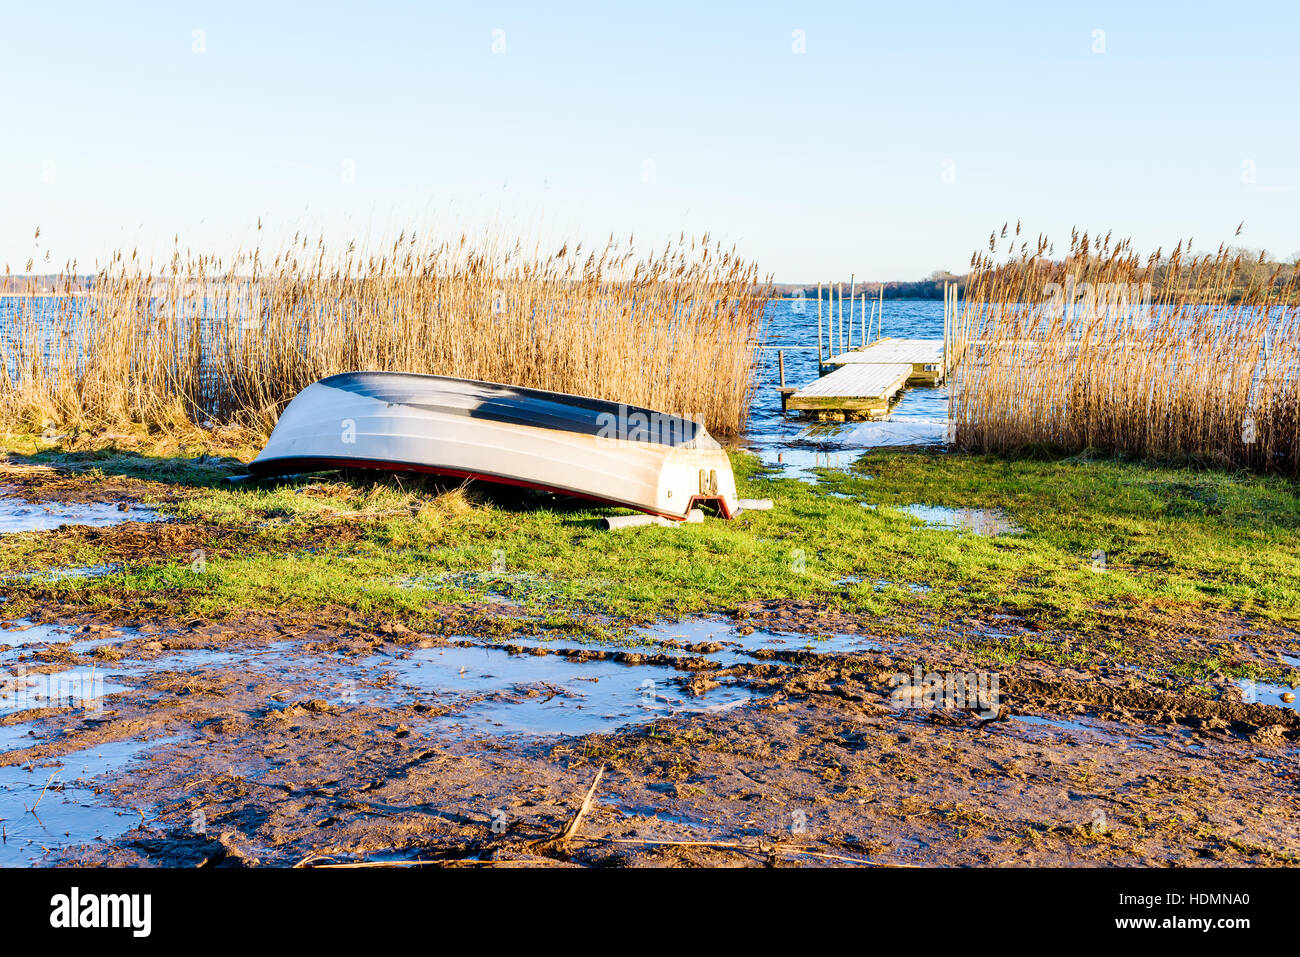 Umgestürzten kleines Ruderboot auf dem Land an einem frostigen und kalten Morgen im Winter. Eis bedeckt Pfützen umgeben das Boot. Frostigen Holzmole in Öffnung sichtbar Stockfoto